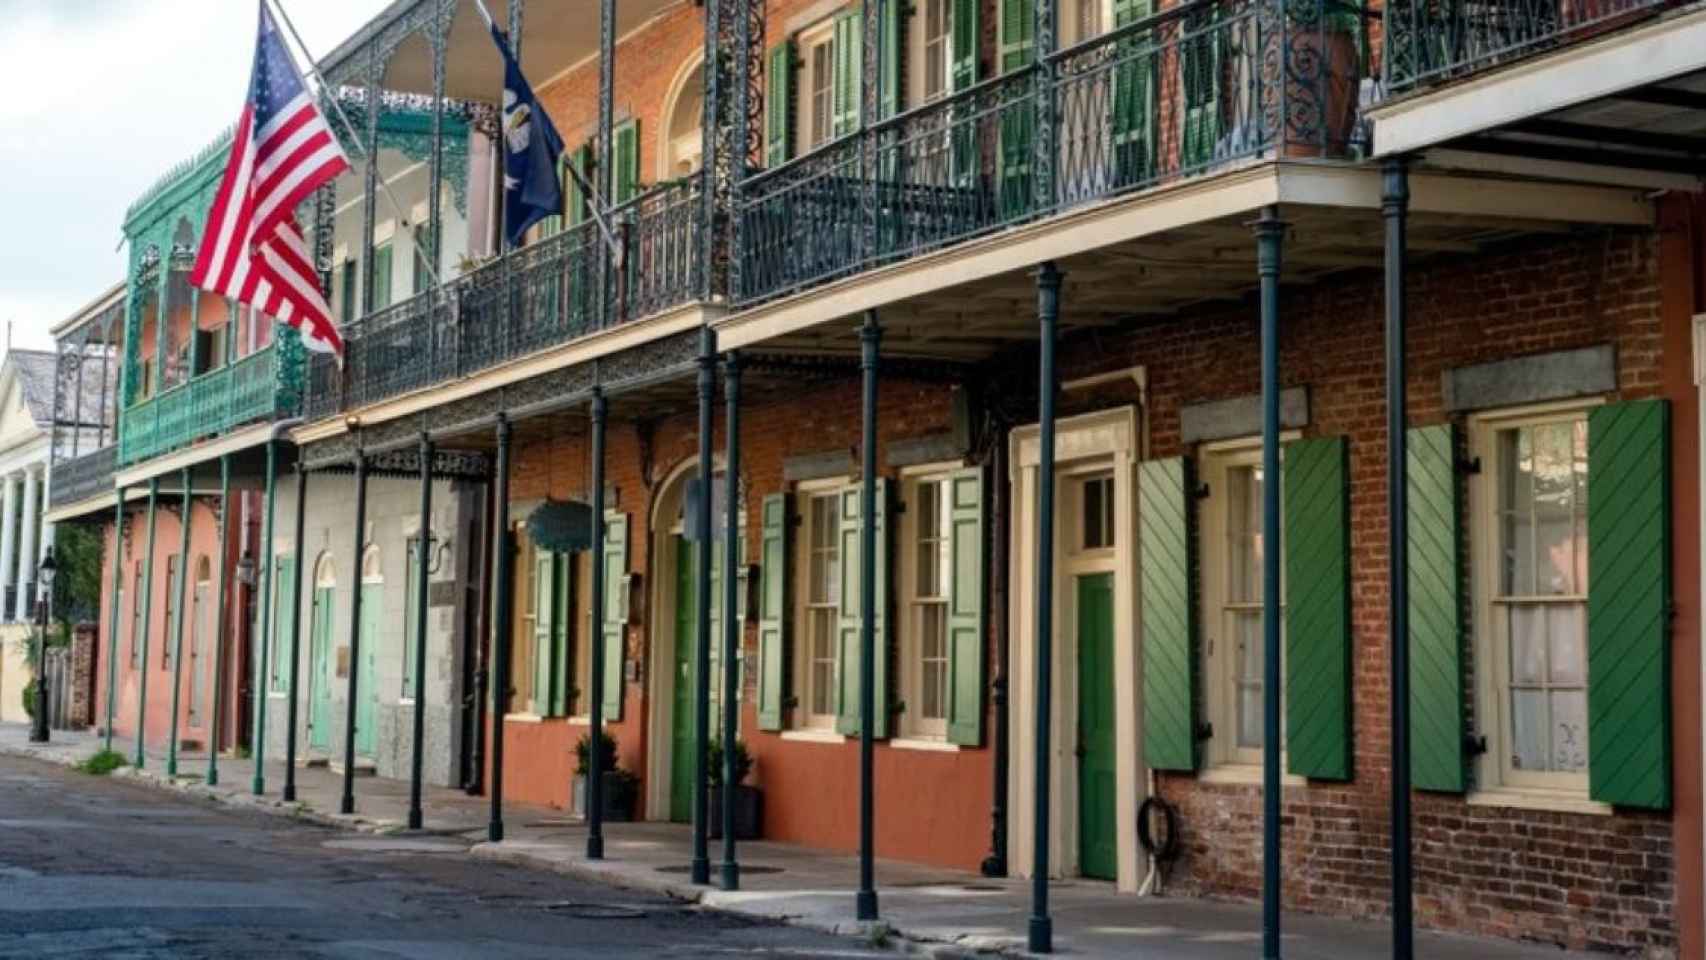 Arquitectura típica de Nueva Orleans, una de las ciudades en riesgo / Mary Hammel en UNSPLASH